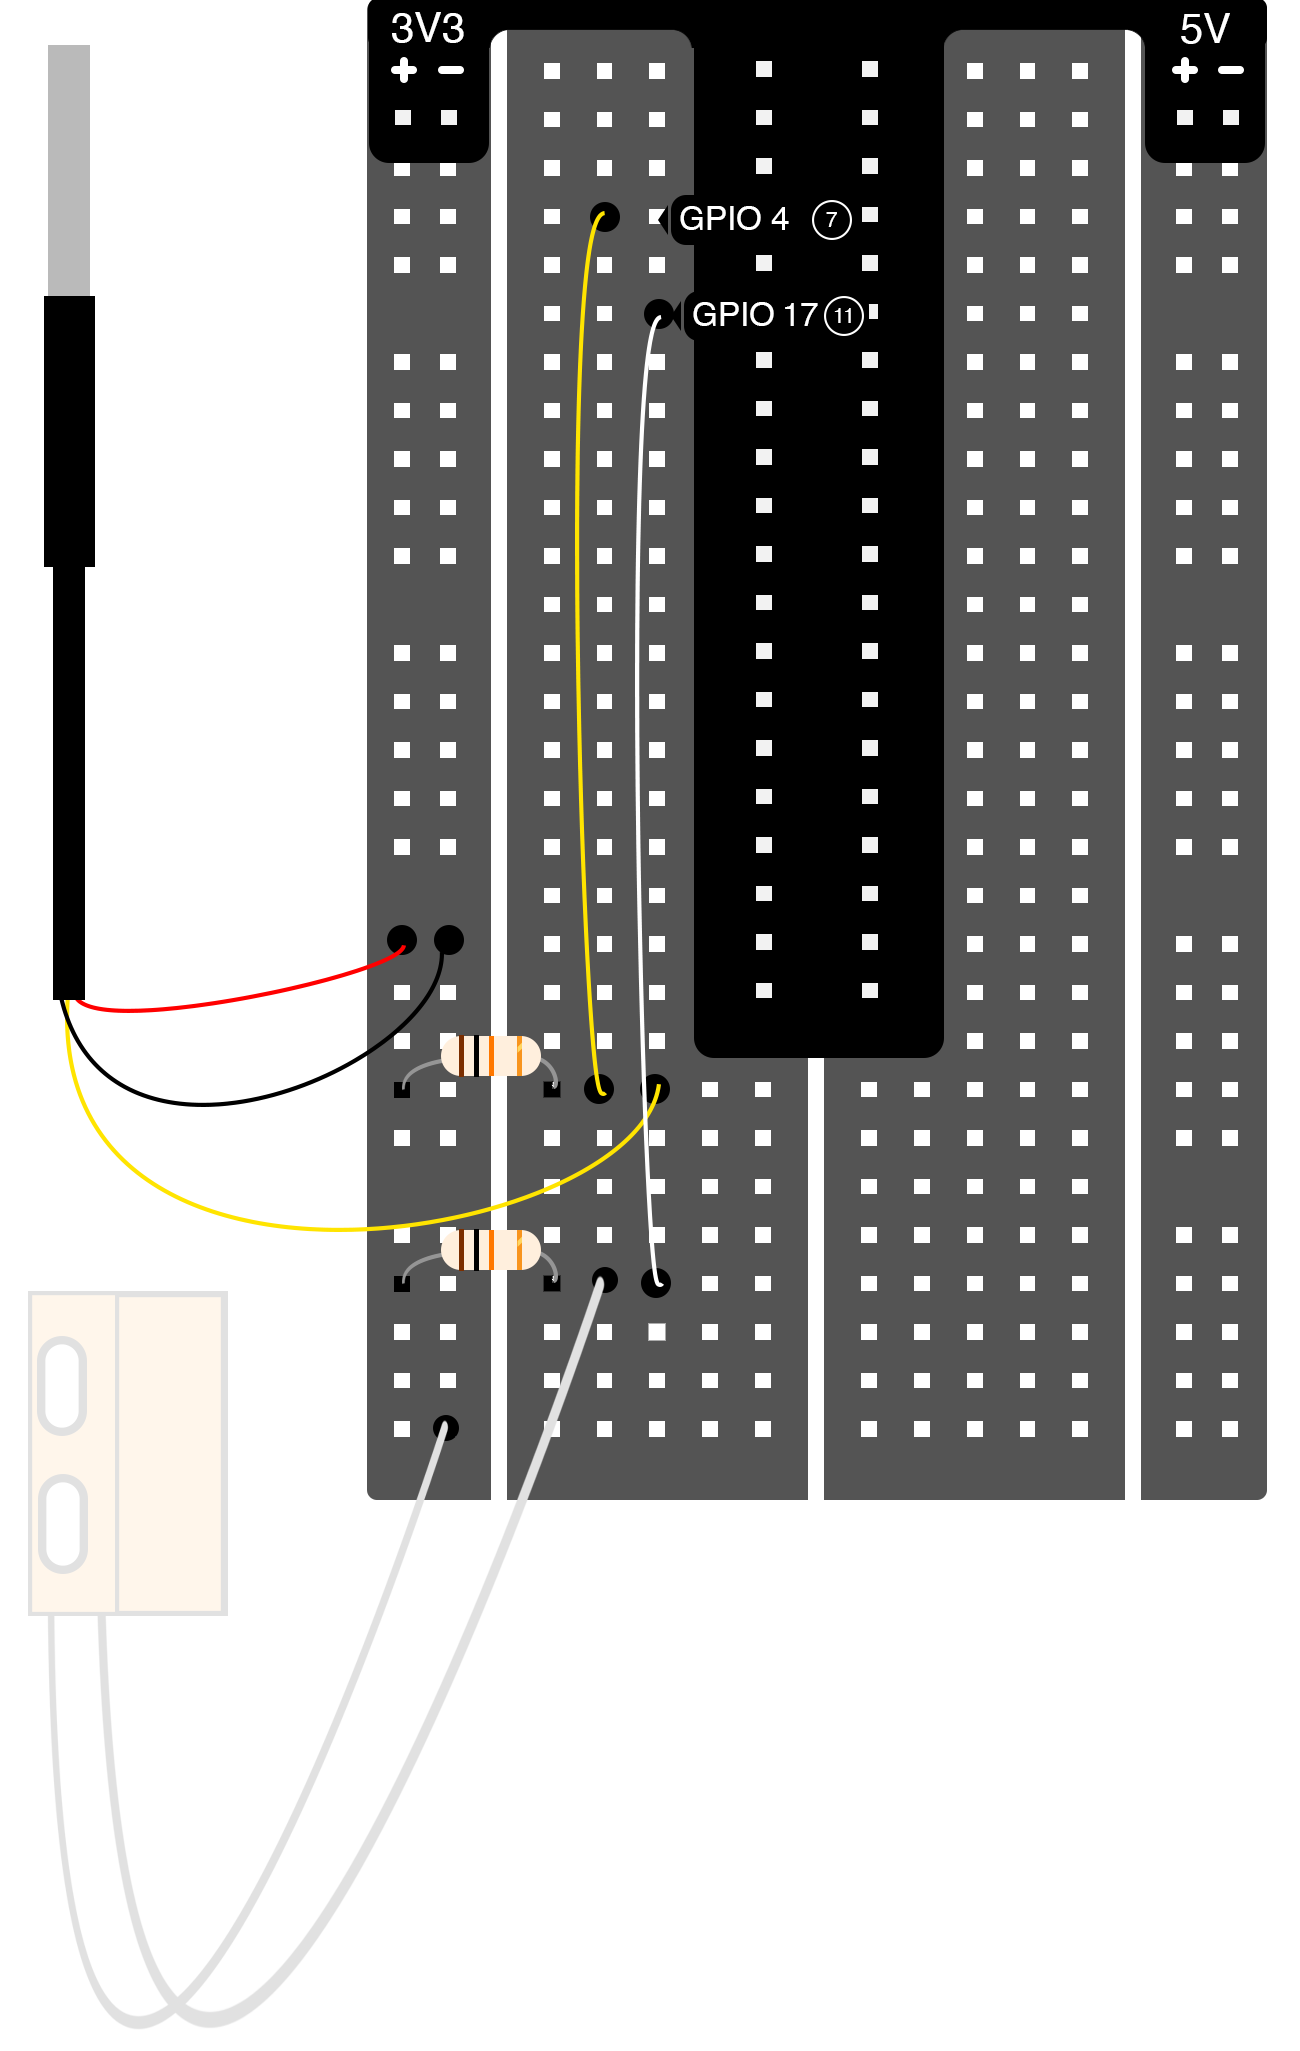 Board Wiring Diagram